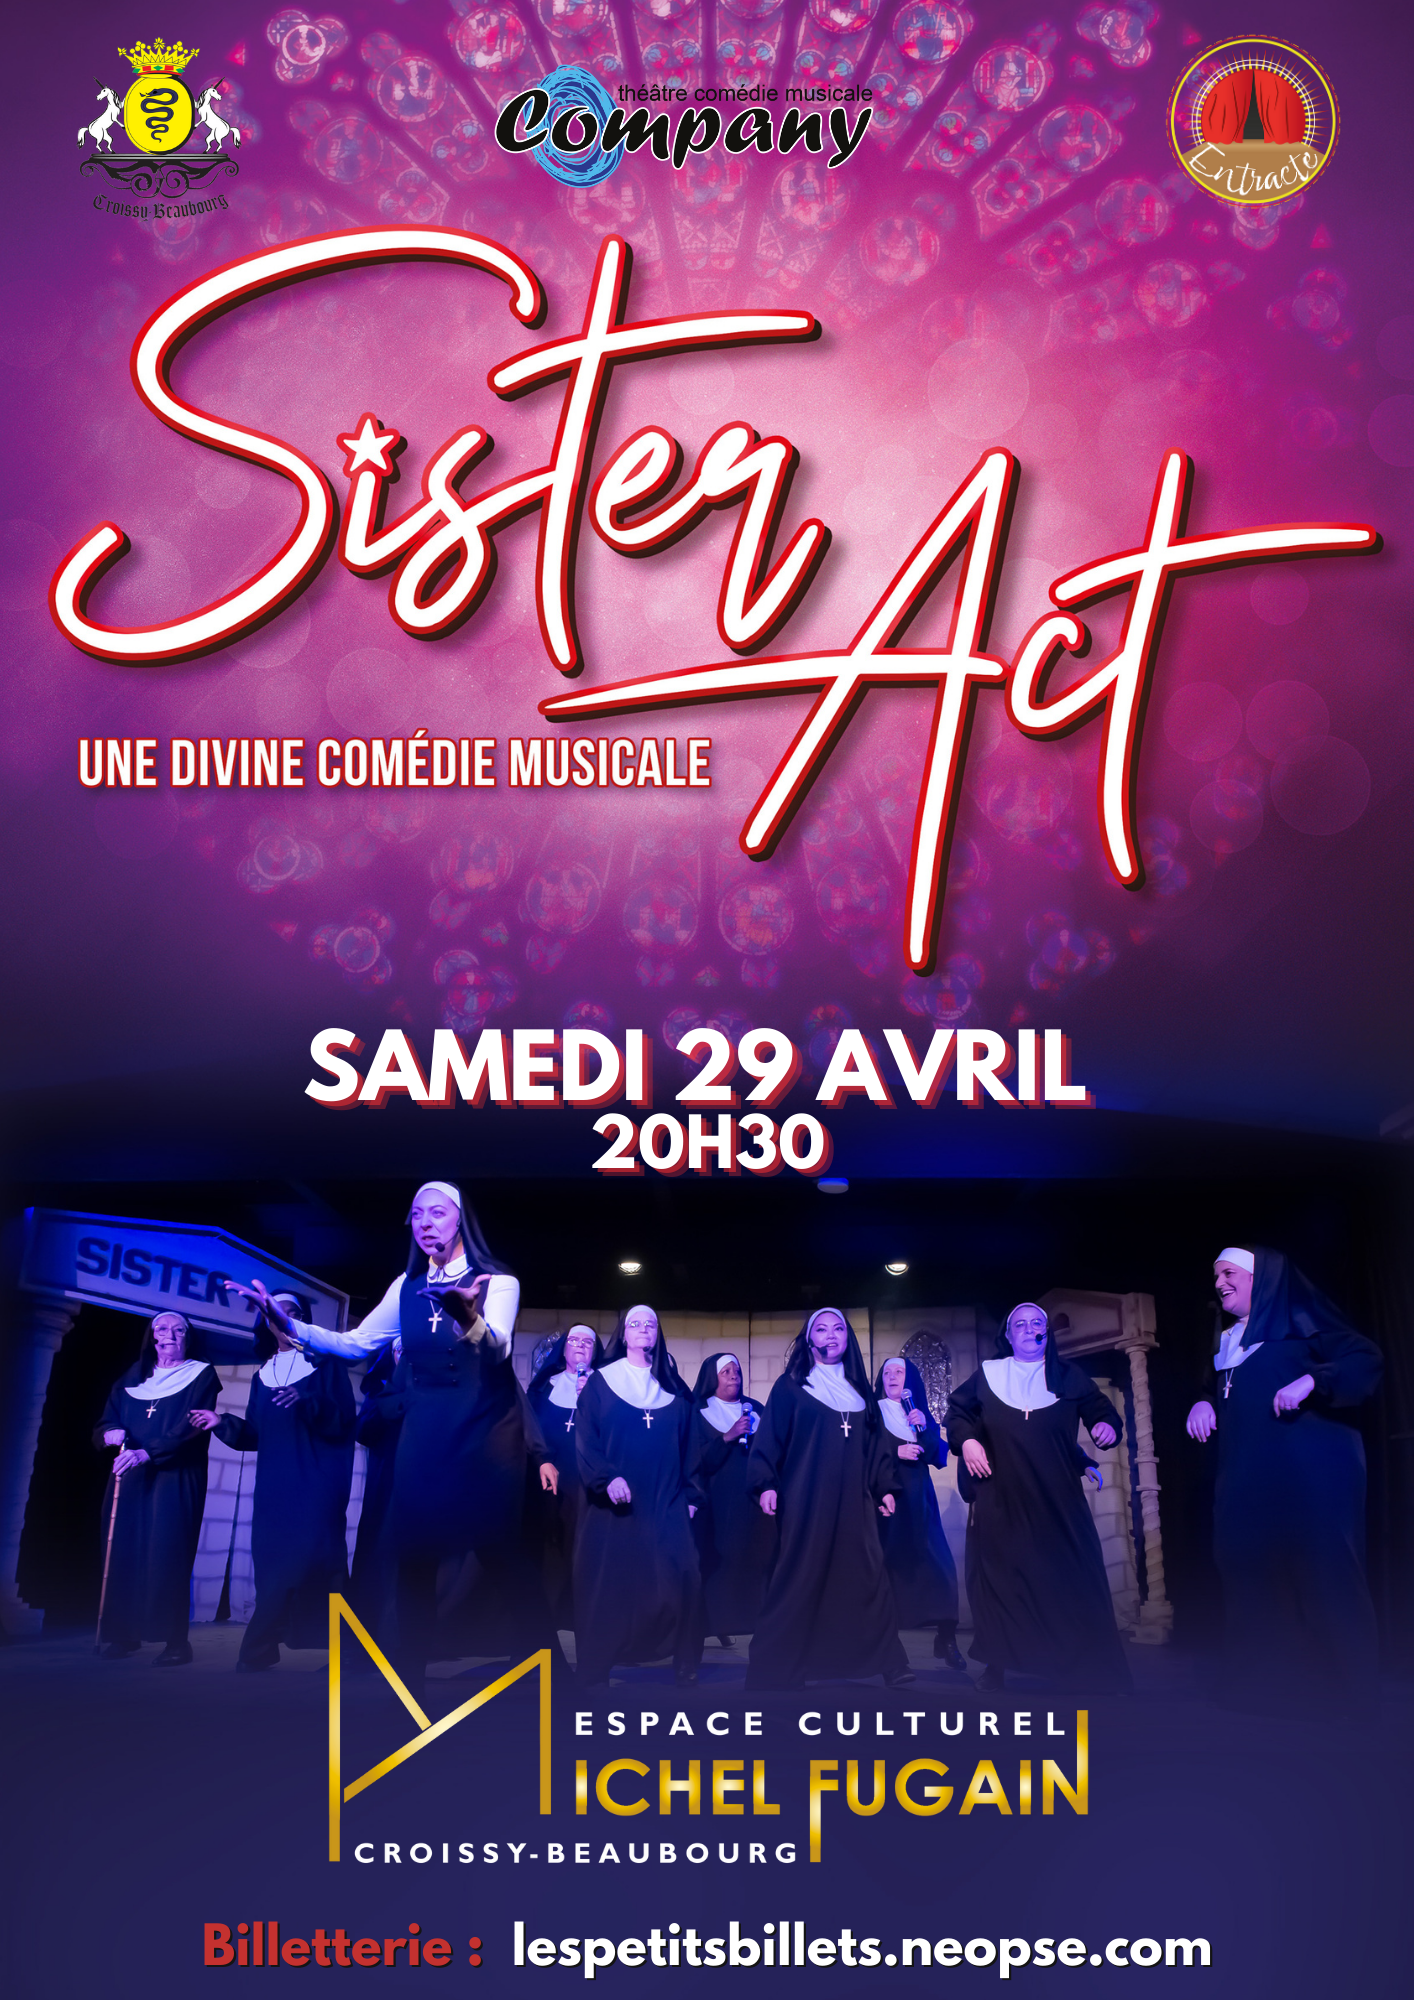 Sister act - une divine comédie musicale